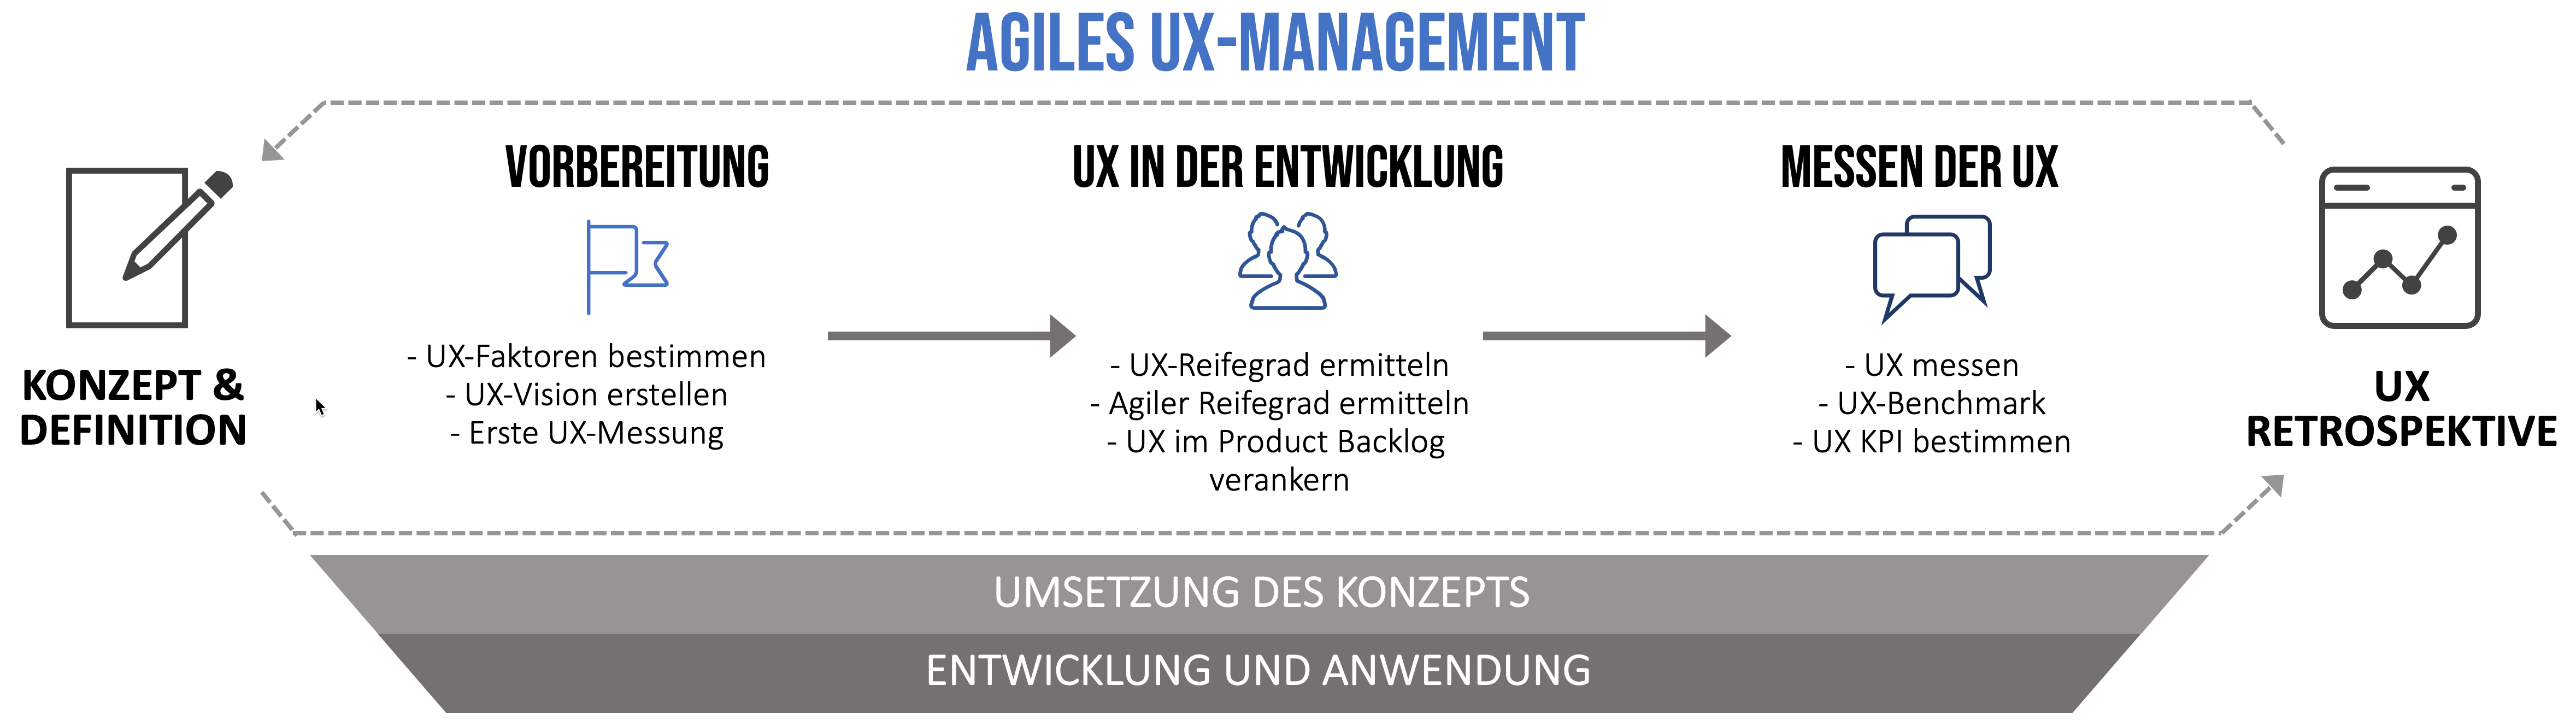 Übersicht agiles UX Management